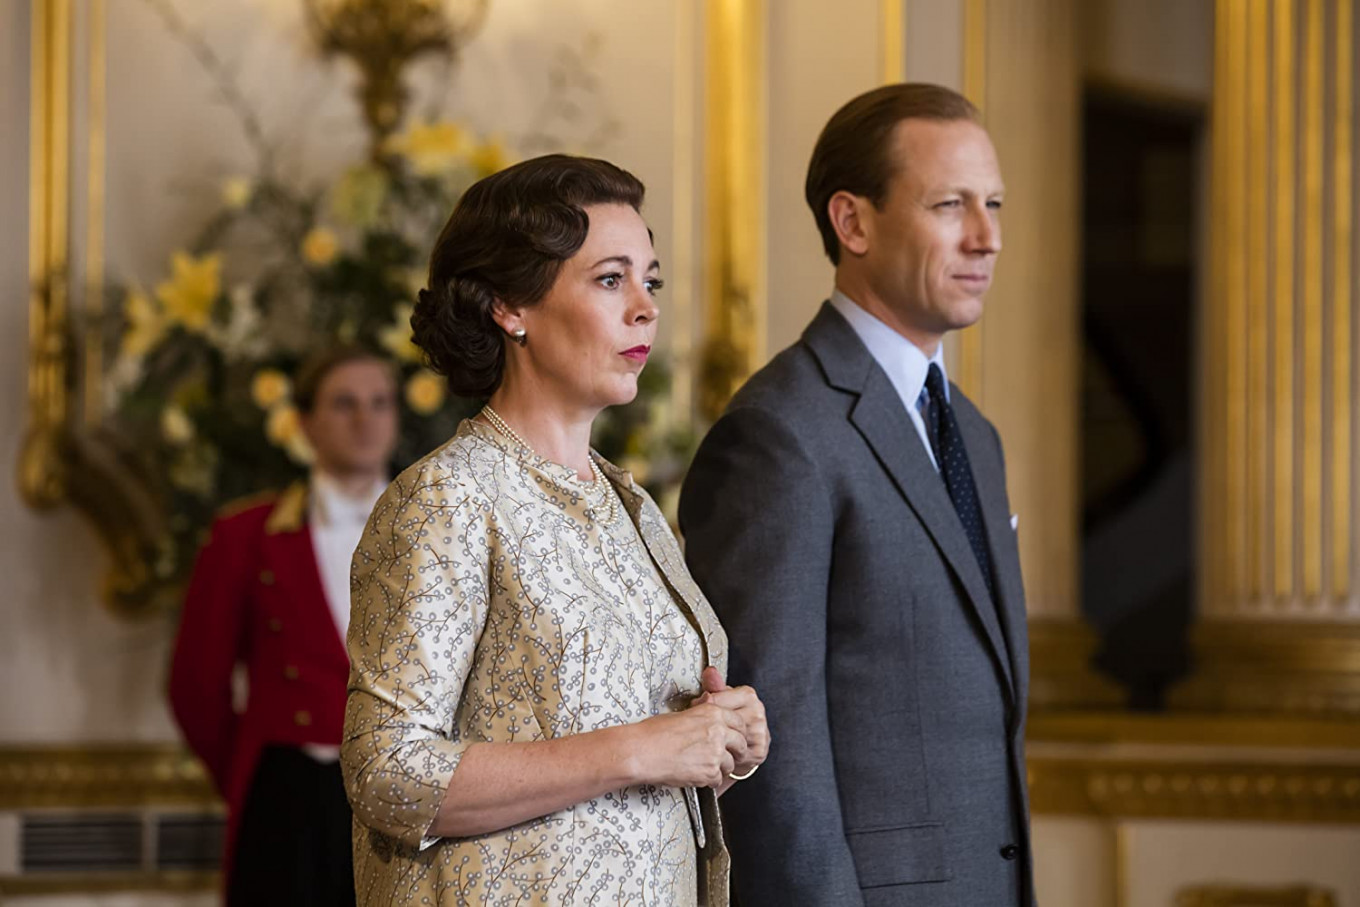 Olivia Coleman plays Queen Elizabeth in "The Crown" on Netflix.